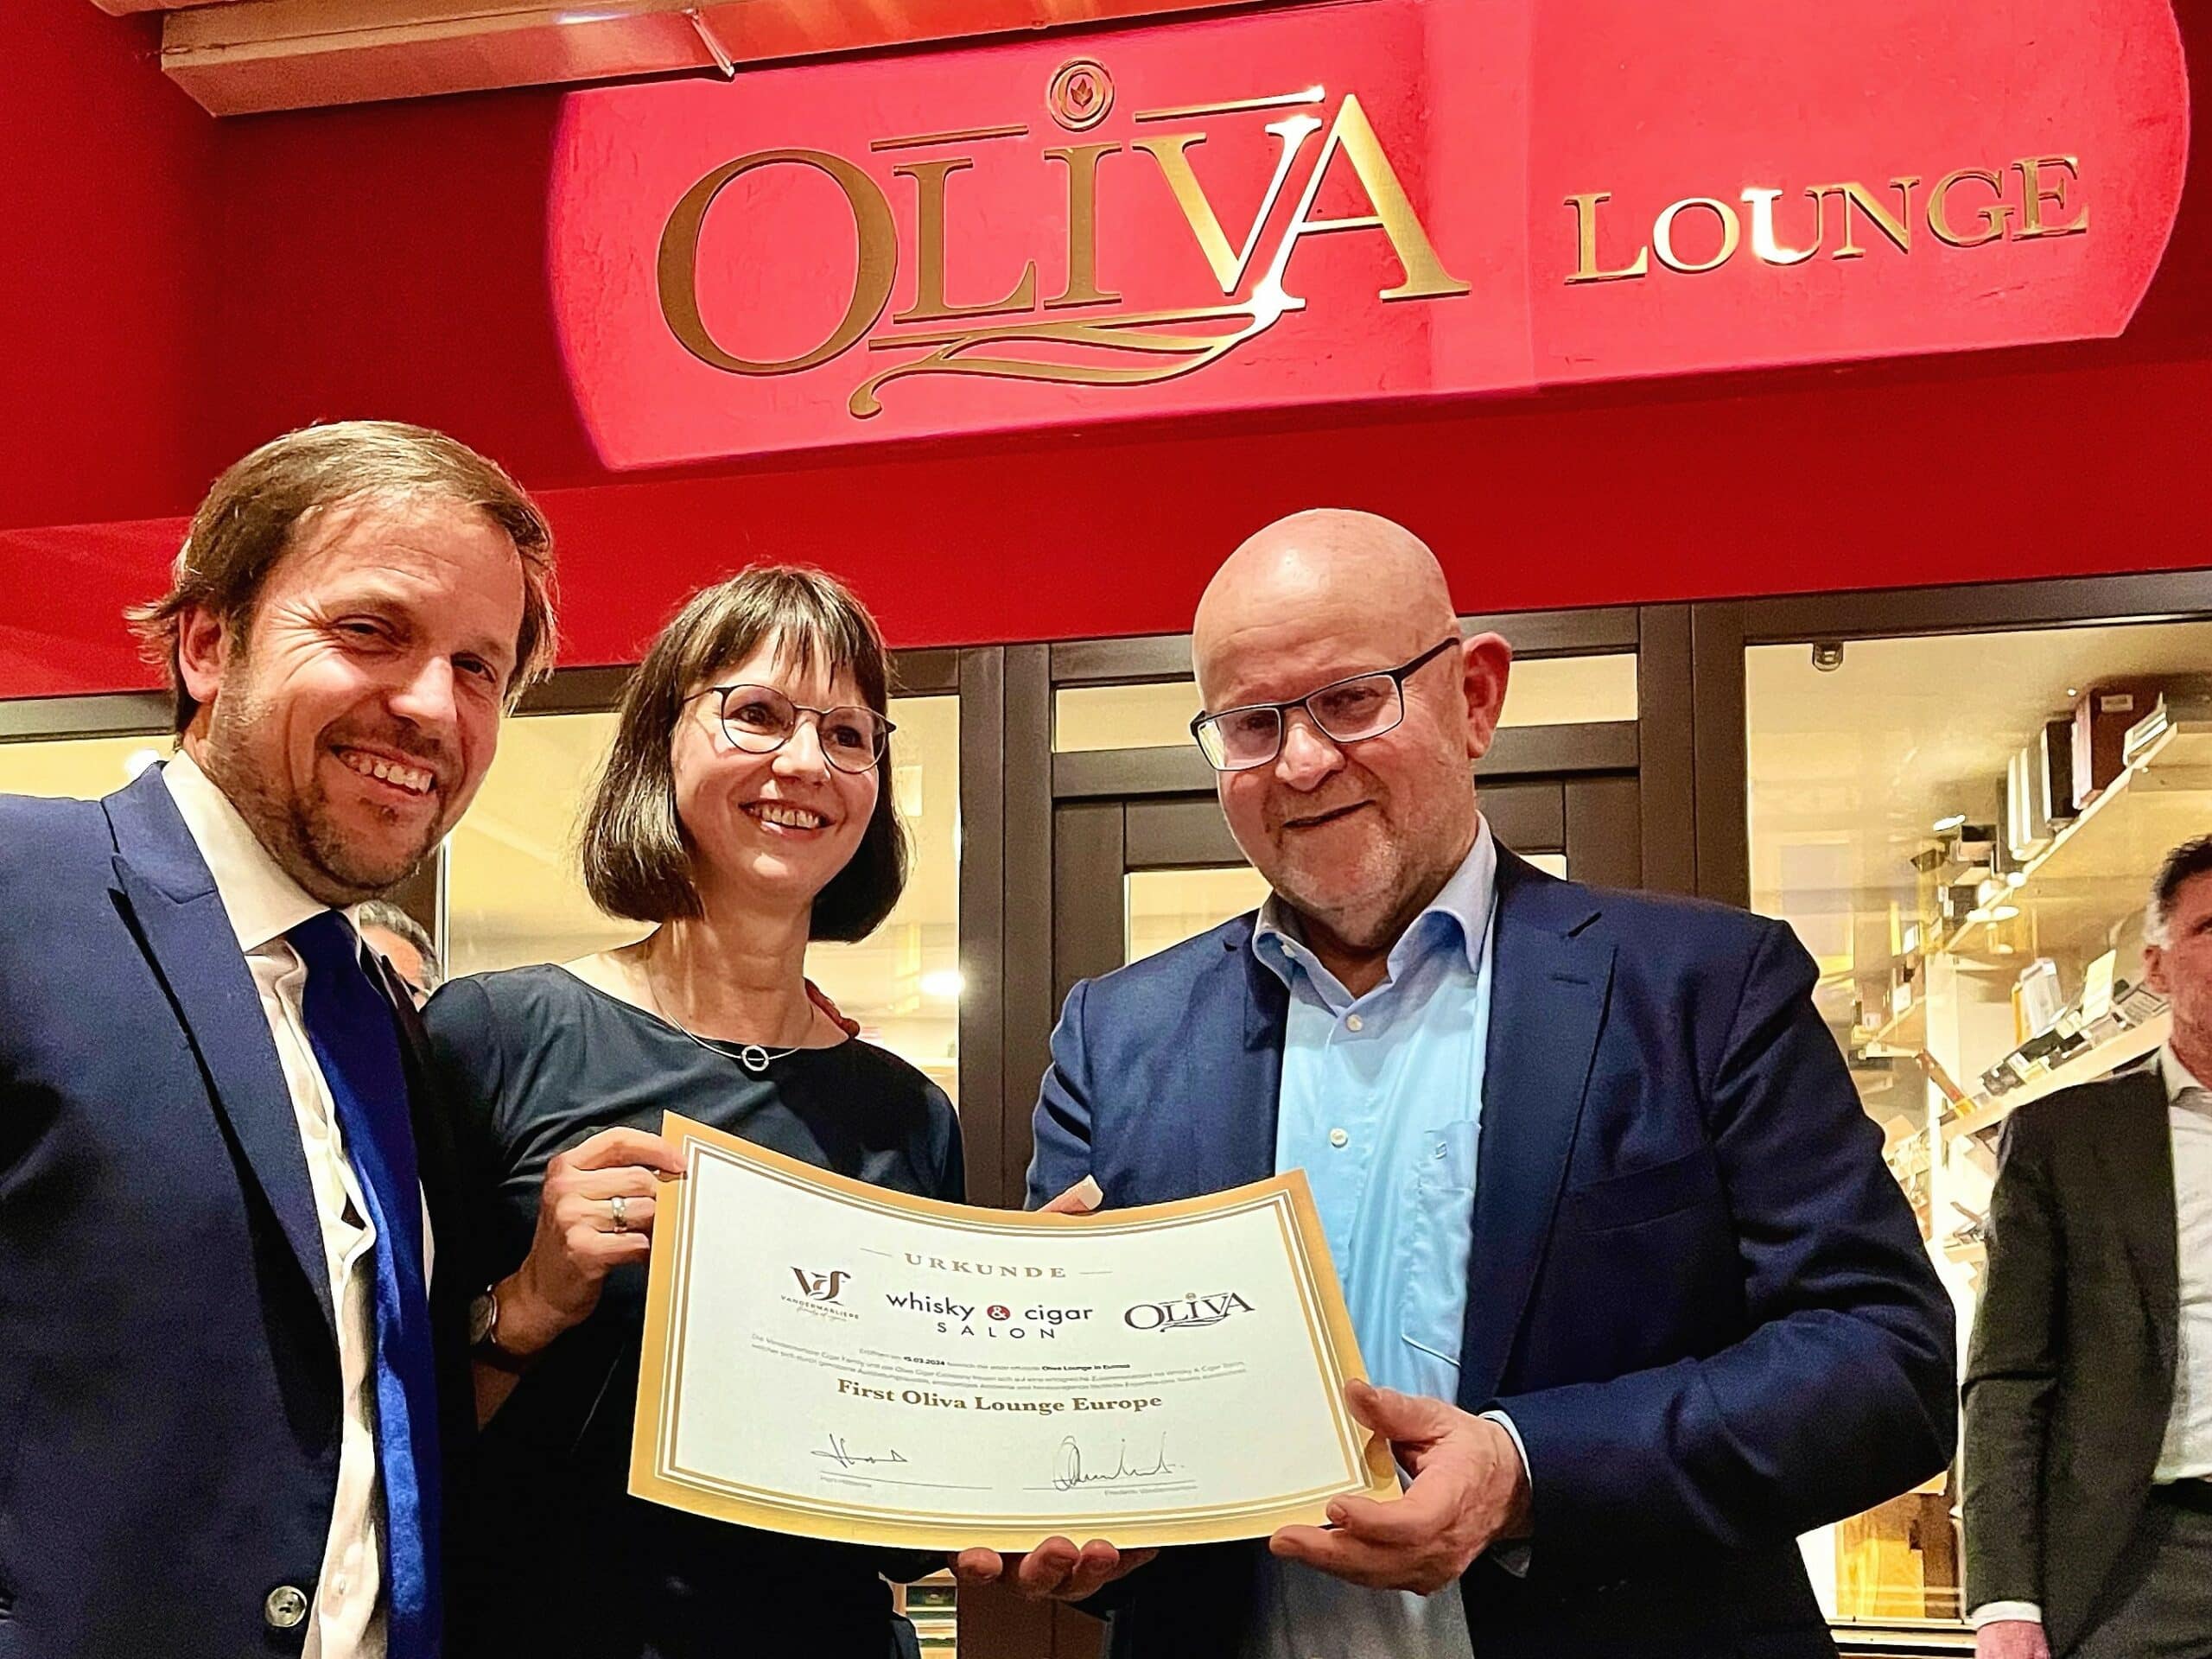 Fred Vandermaliere (CEO VCF, Inhaber von Oliva Cigars) und Han Hilderink präsentieren die Urkunde zur First Oliva Lounge Europe.